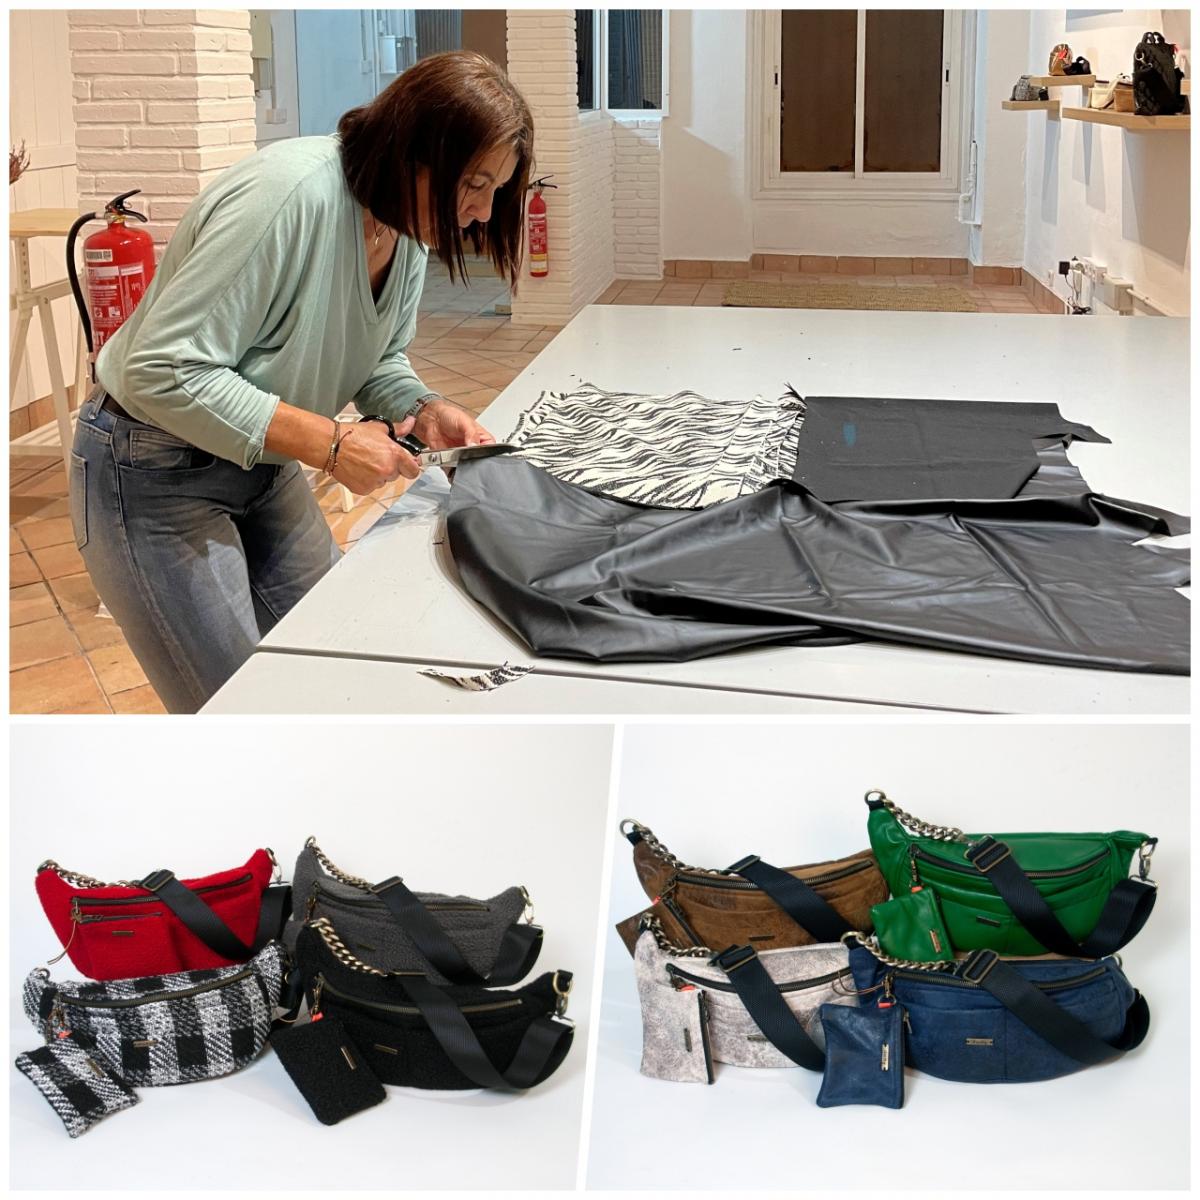 BamBag presenta su nueva colección de bolsos bandolera para mujeres, dando vida a tejidos de moda y reutilizados.